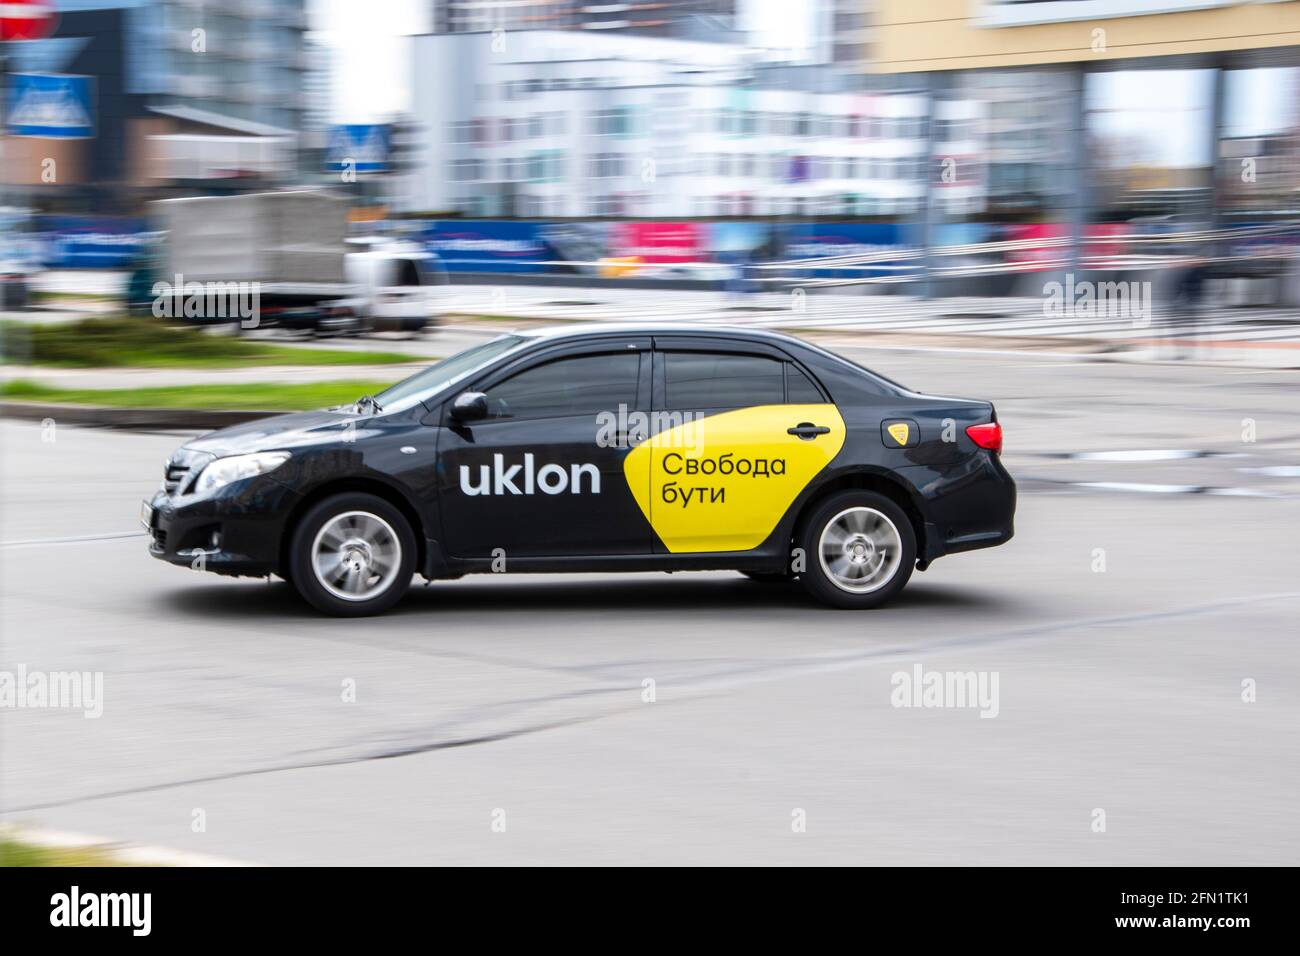 Ukraine, Kiev - 26 avril 2021: Voiture de taxi noire Toyota Corolla Uklon  se déplaçant dans la rue. Éditorial Photo Stock - Alamy